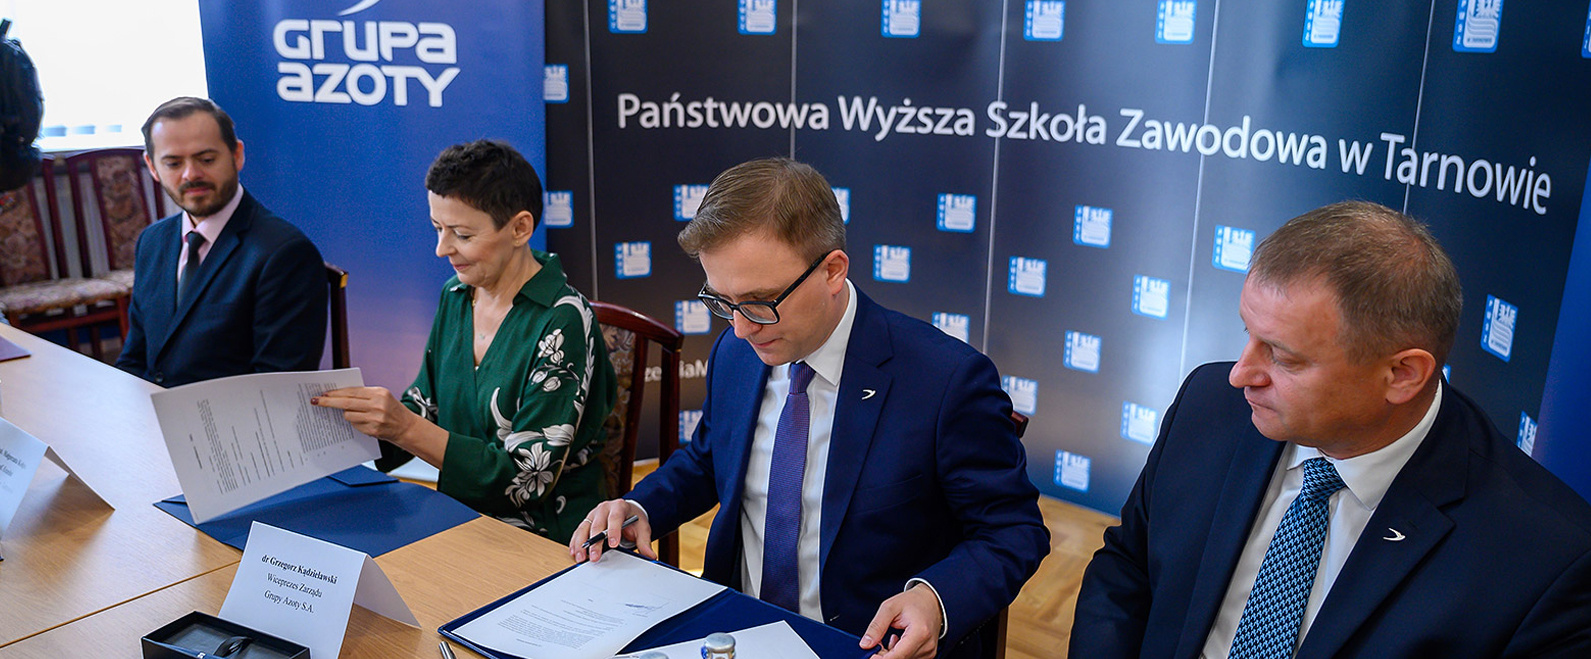 Grupa Azoty S.A. zawarła umowę o współpracy z Państwową Wyższą Szkołą Zawodową  w Tarnowie